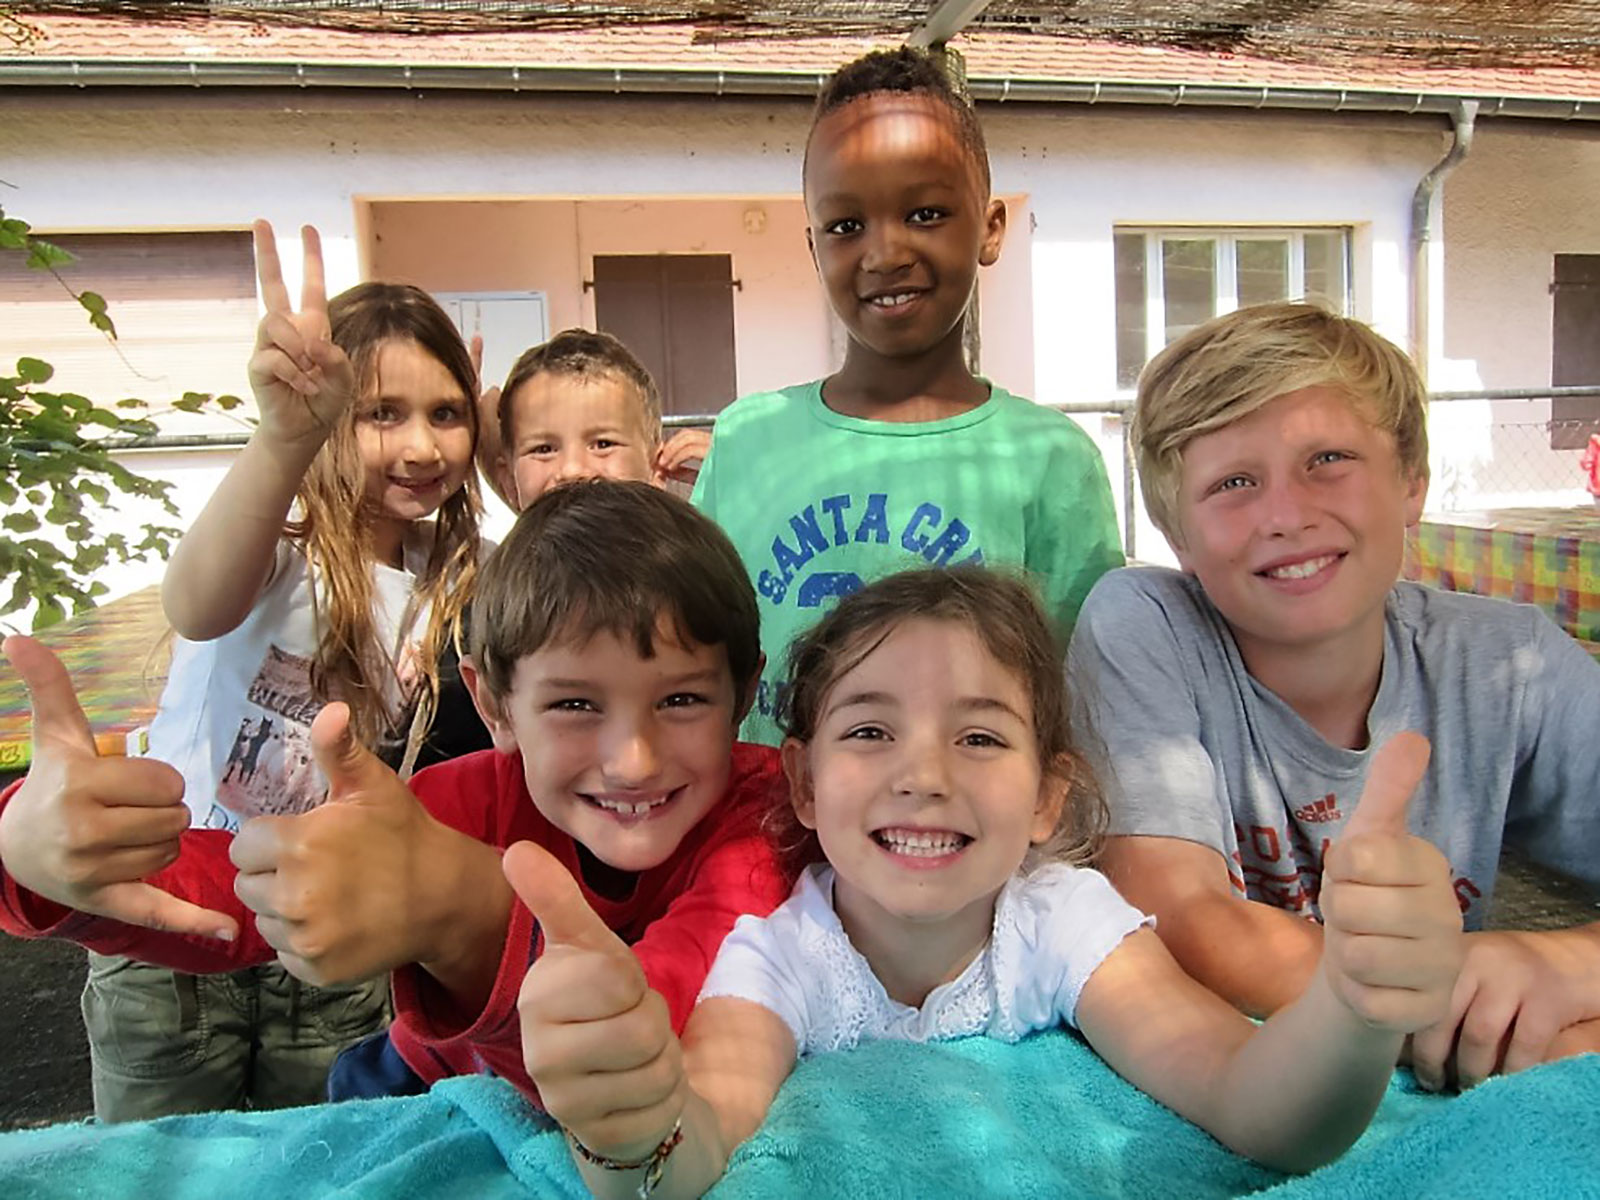 Pâques à Genève : 6 activités enfants à faire pendant les vacances